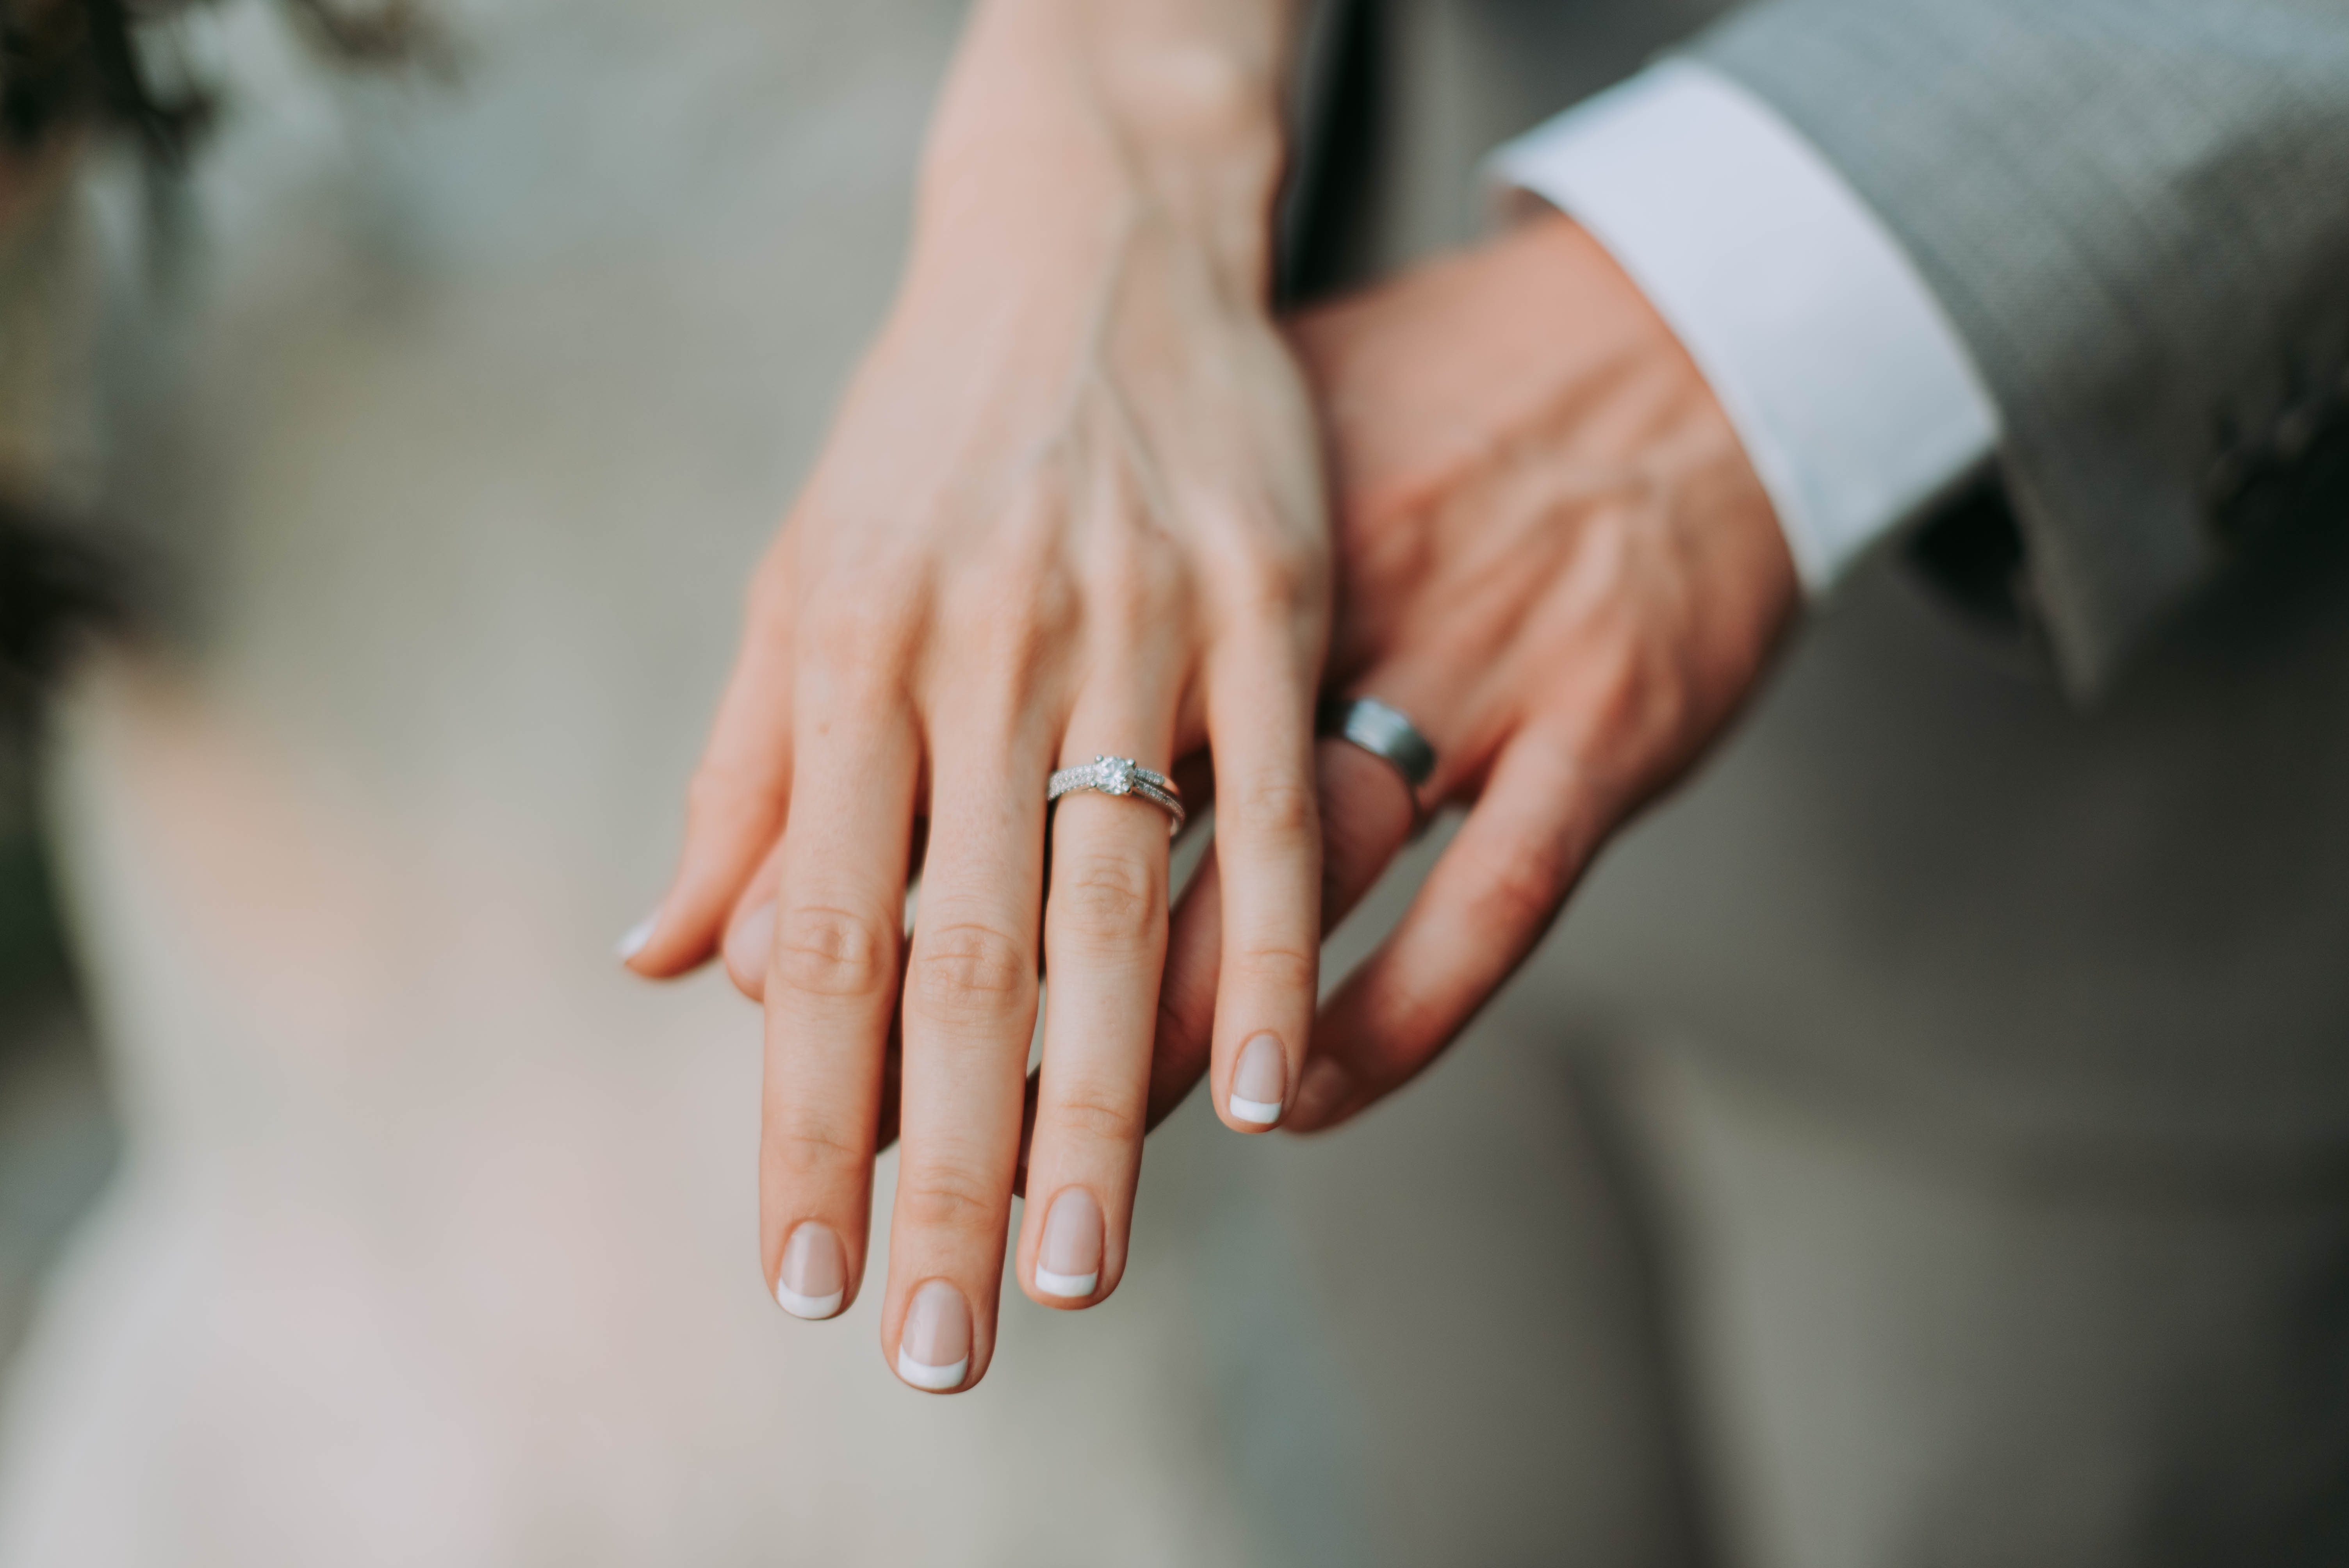 Супружество какое. Брак. Обручальное кольцо. Обручальное кольцо на пальце. Обручальные кольца на руках.